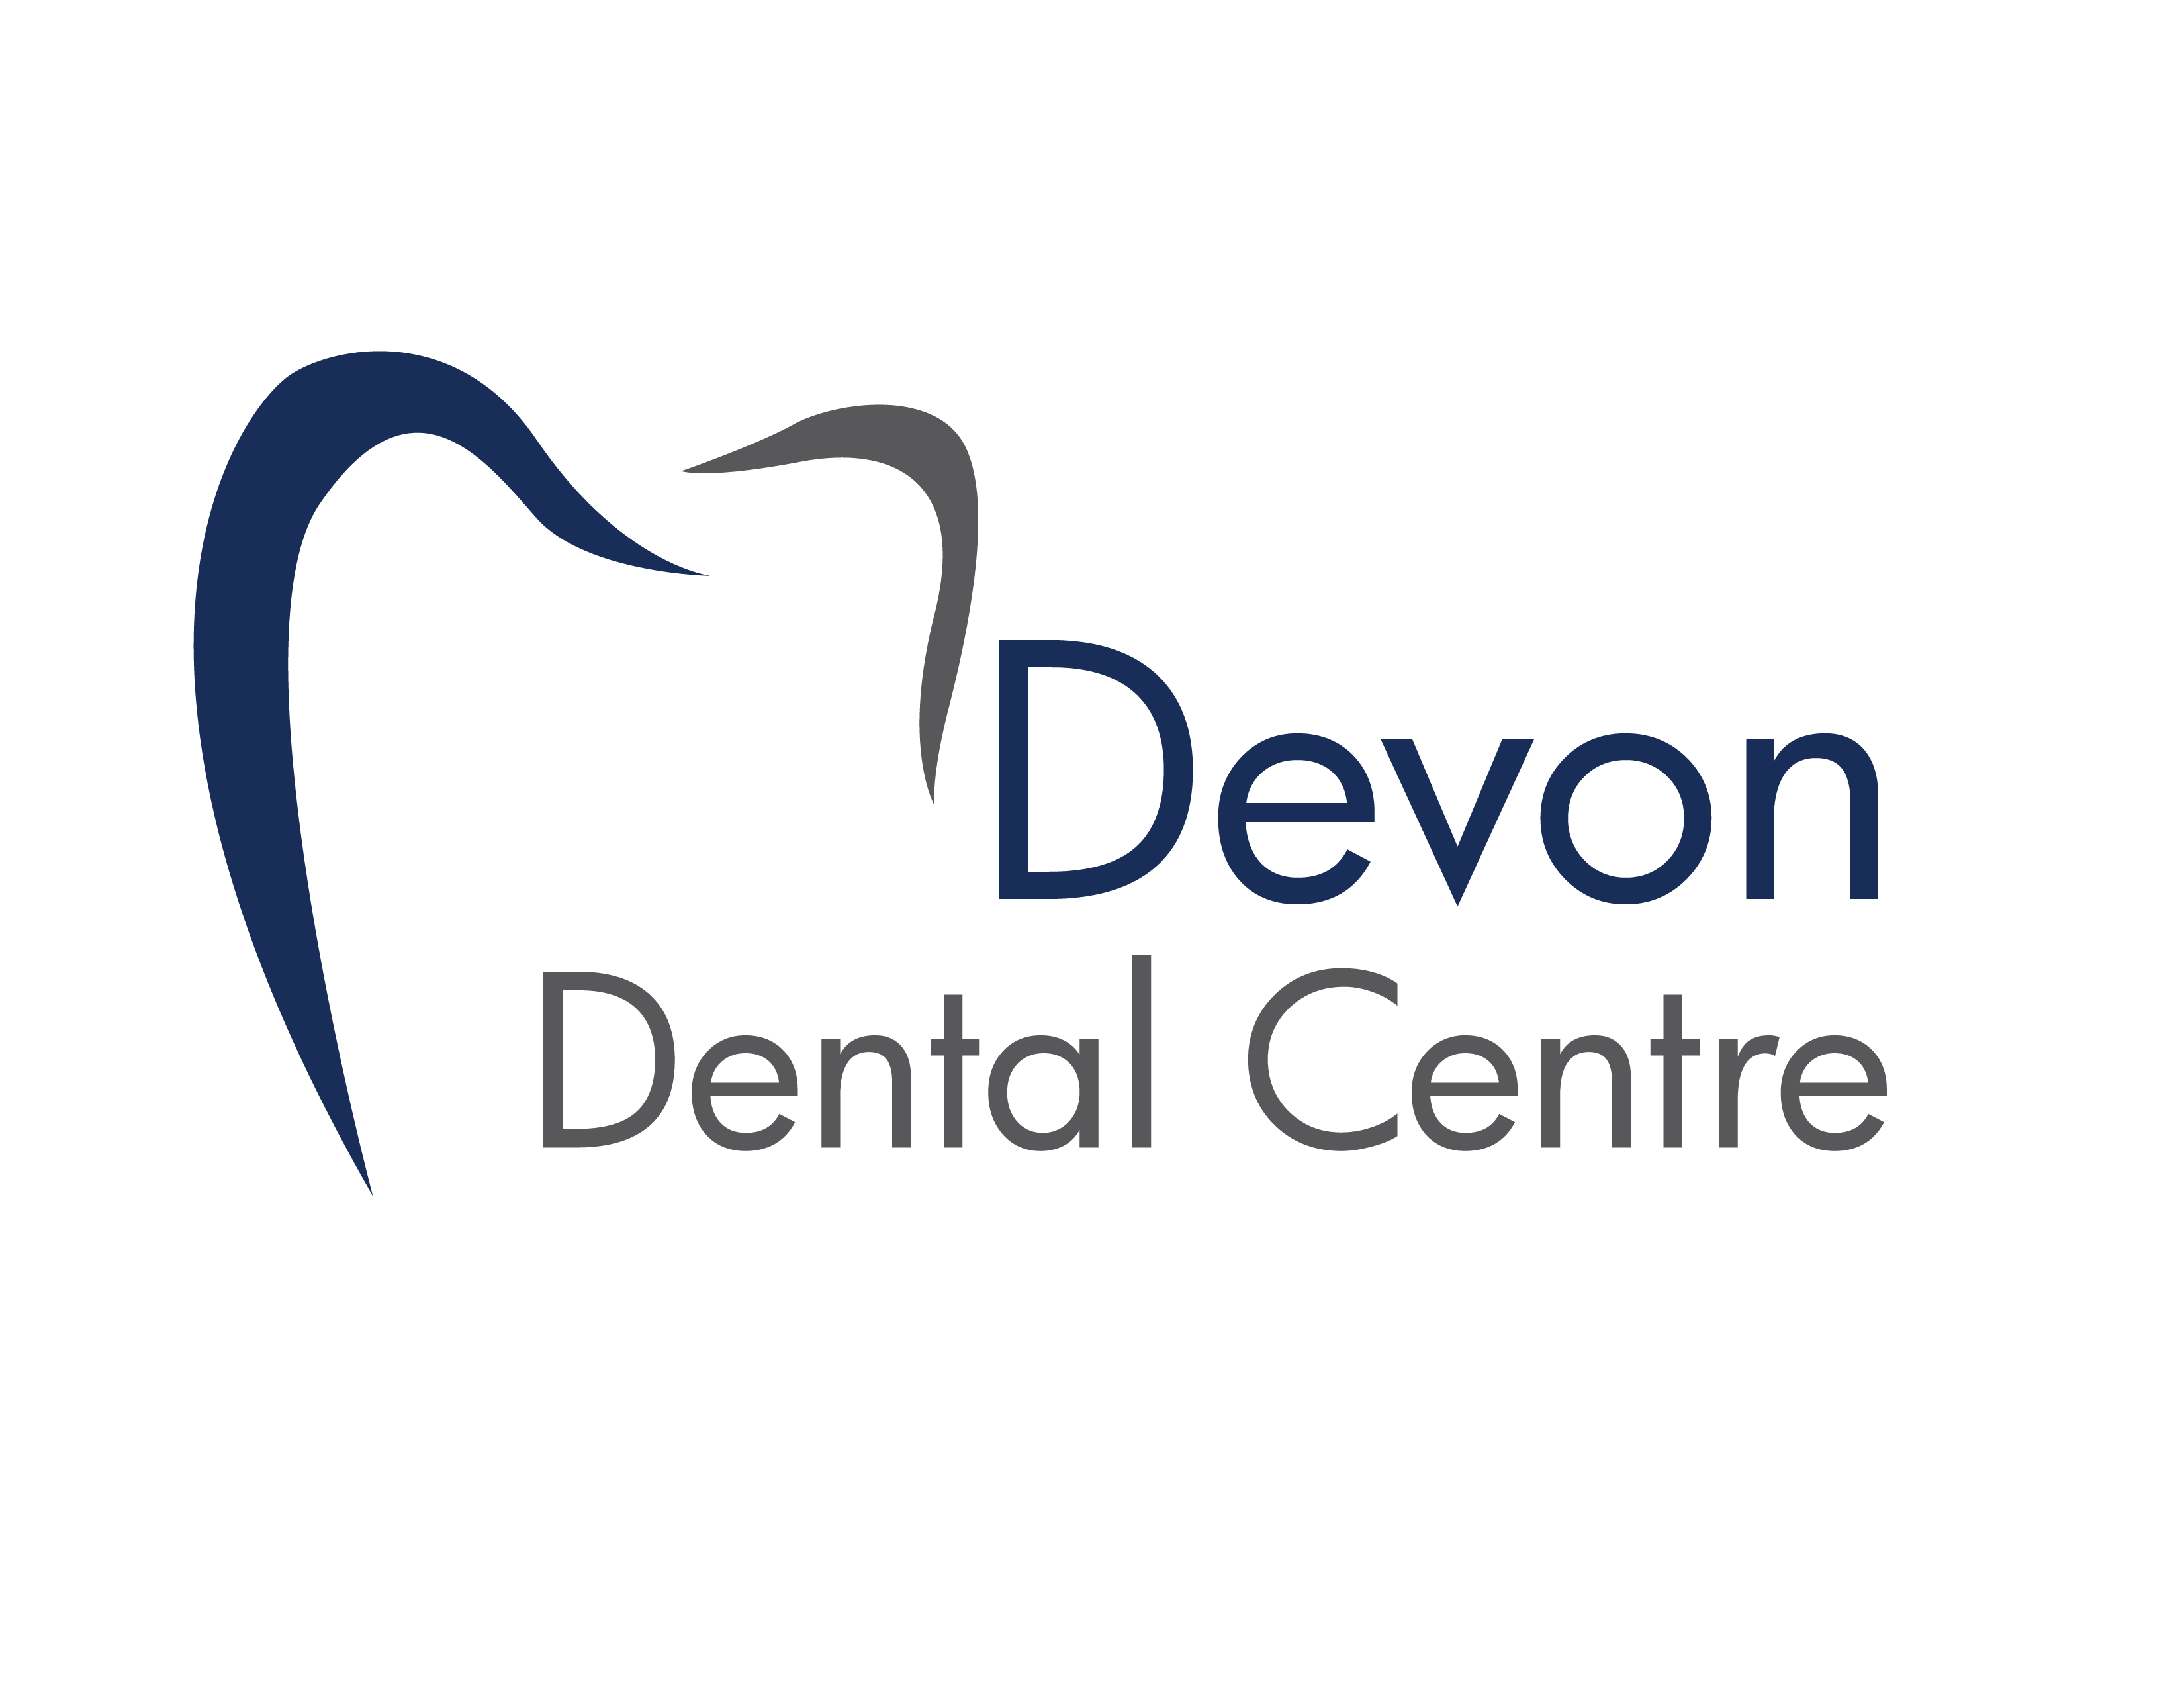 Devon Dental Centre